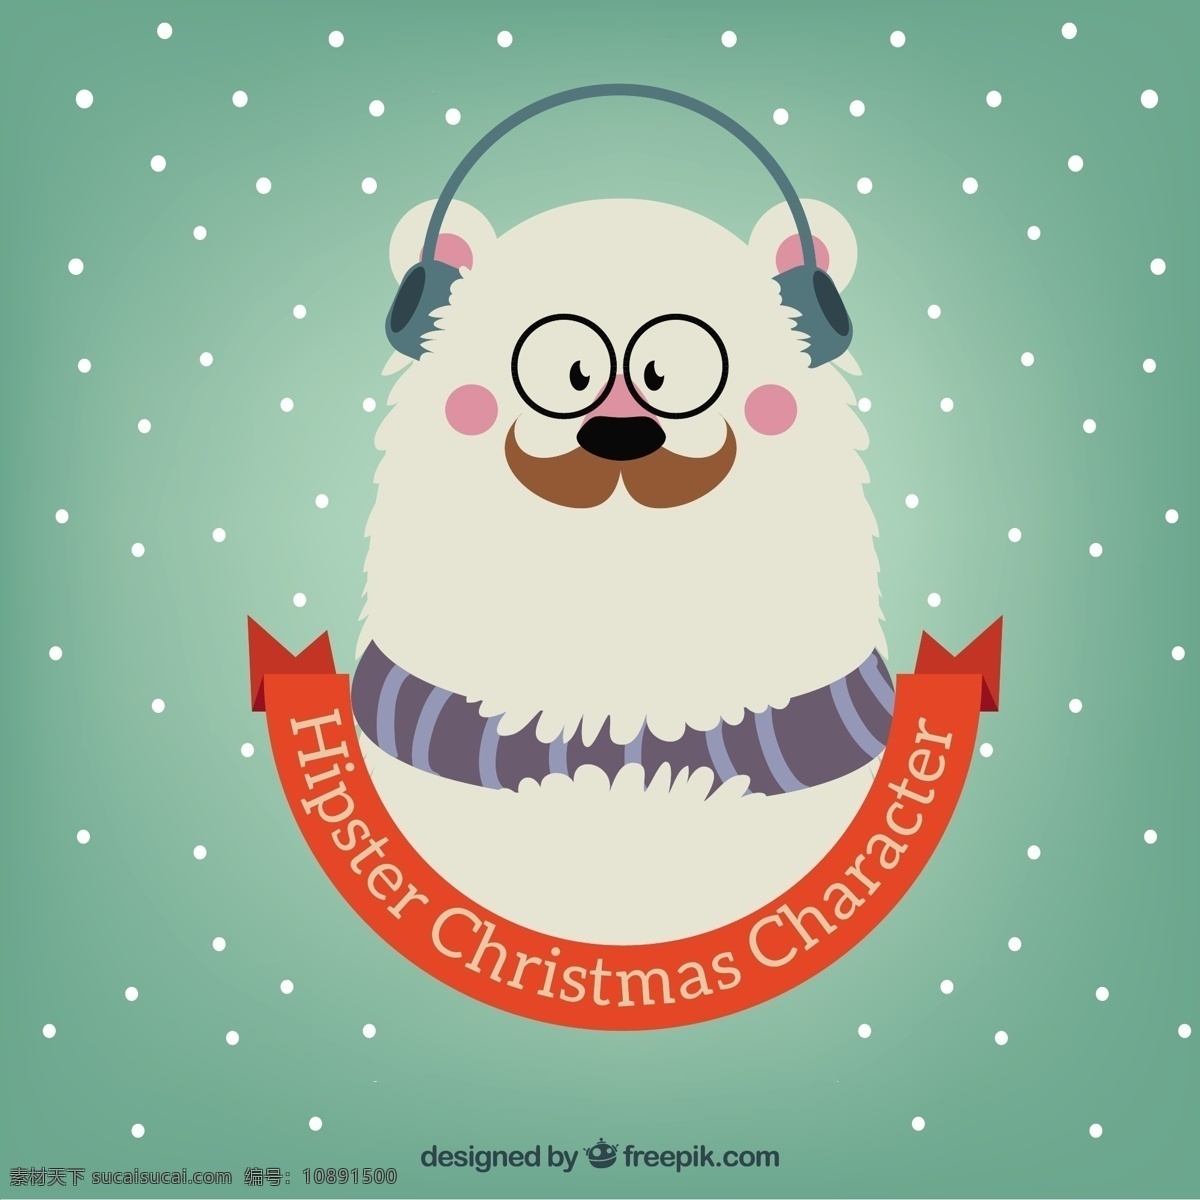 时髦 圣诞 熊 插图 旧货 丝带 圣诞节 复古 雪 圣诞快乐 冬天快乐 眼镜熊 庆祝节日 胡子 耳机 现代的 搞笑的 节日快乐 青色 天蓝色